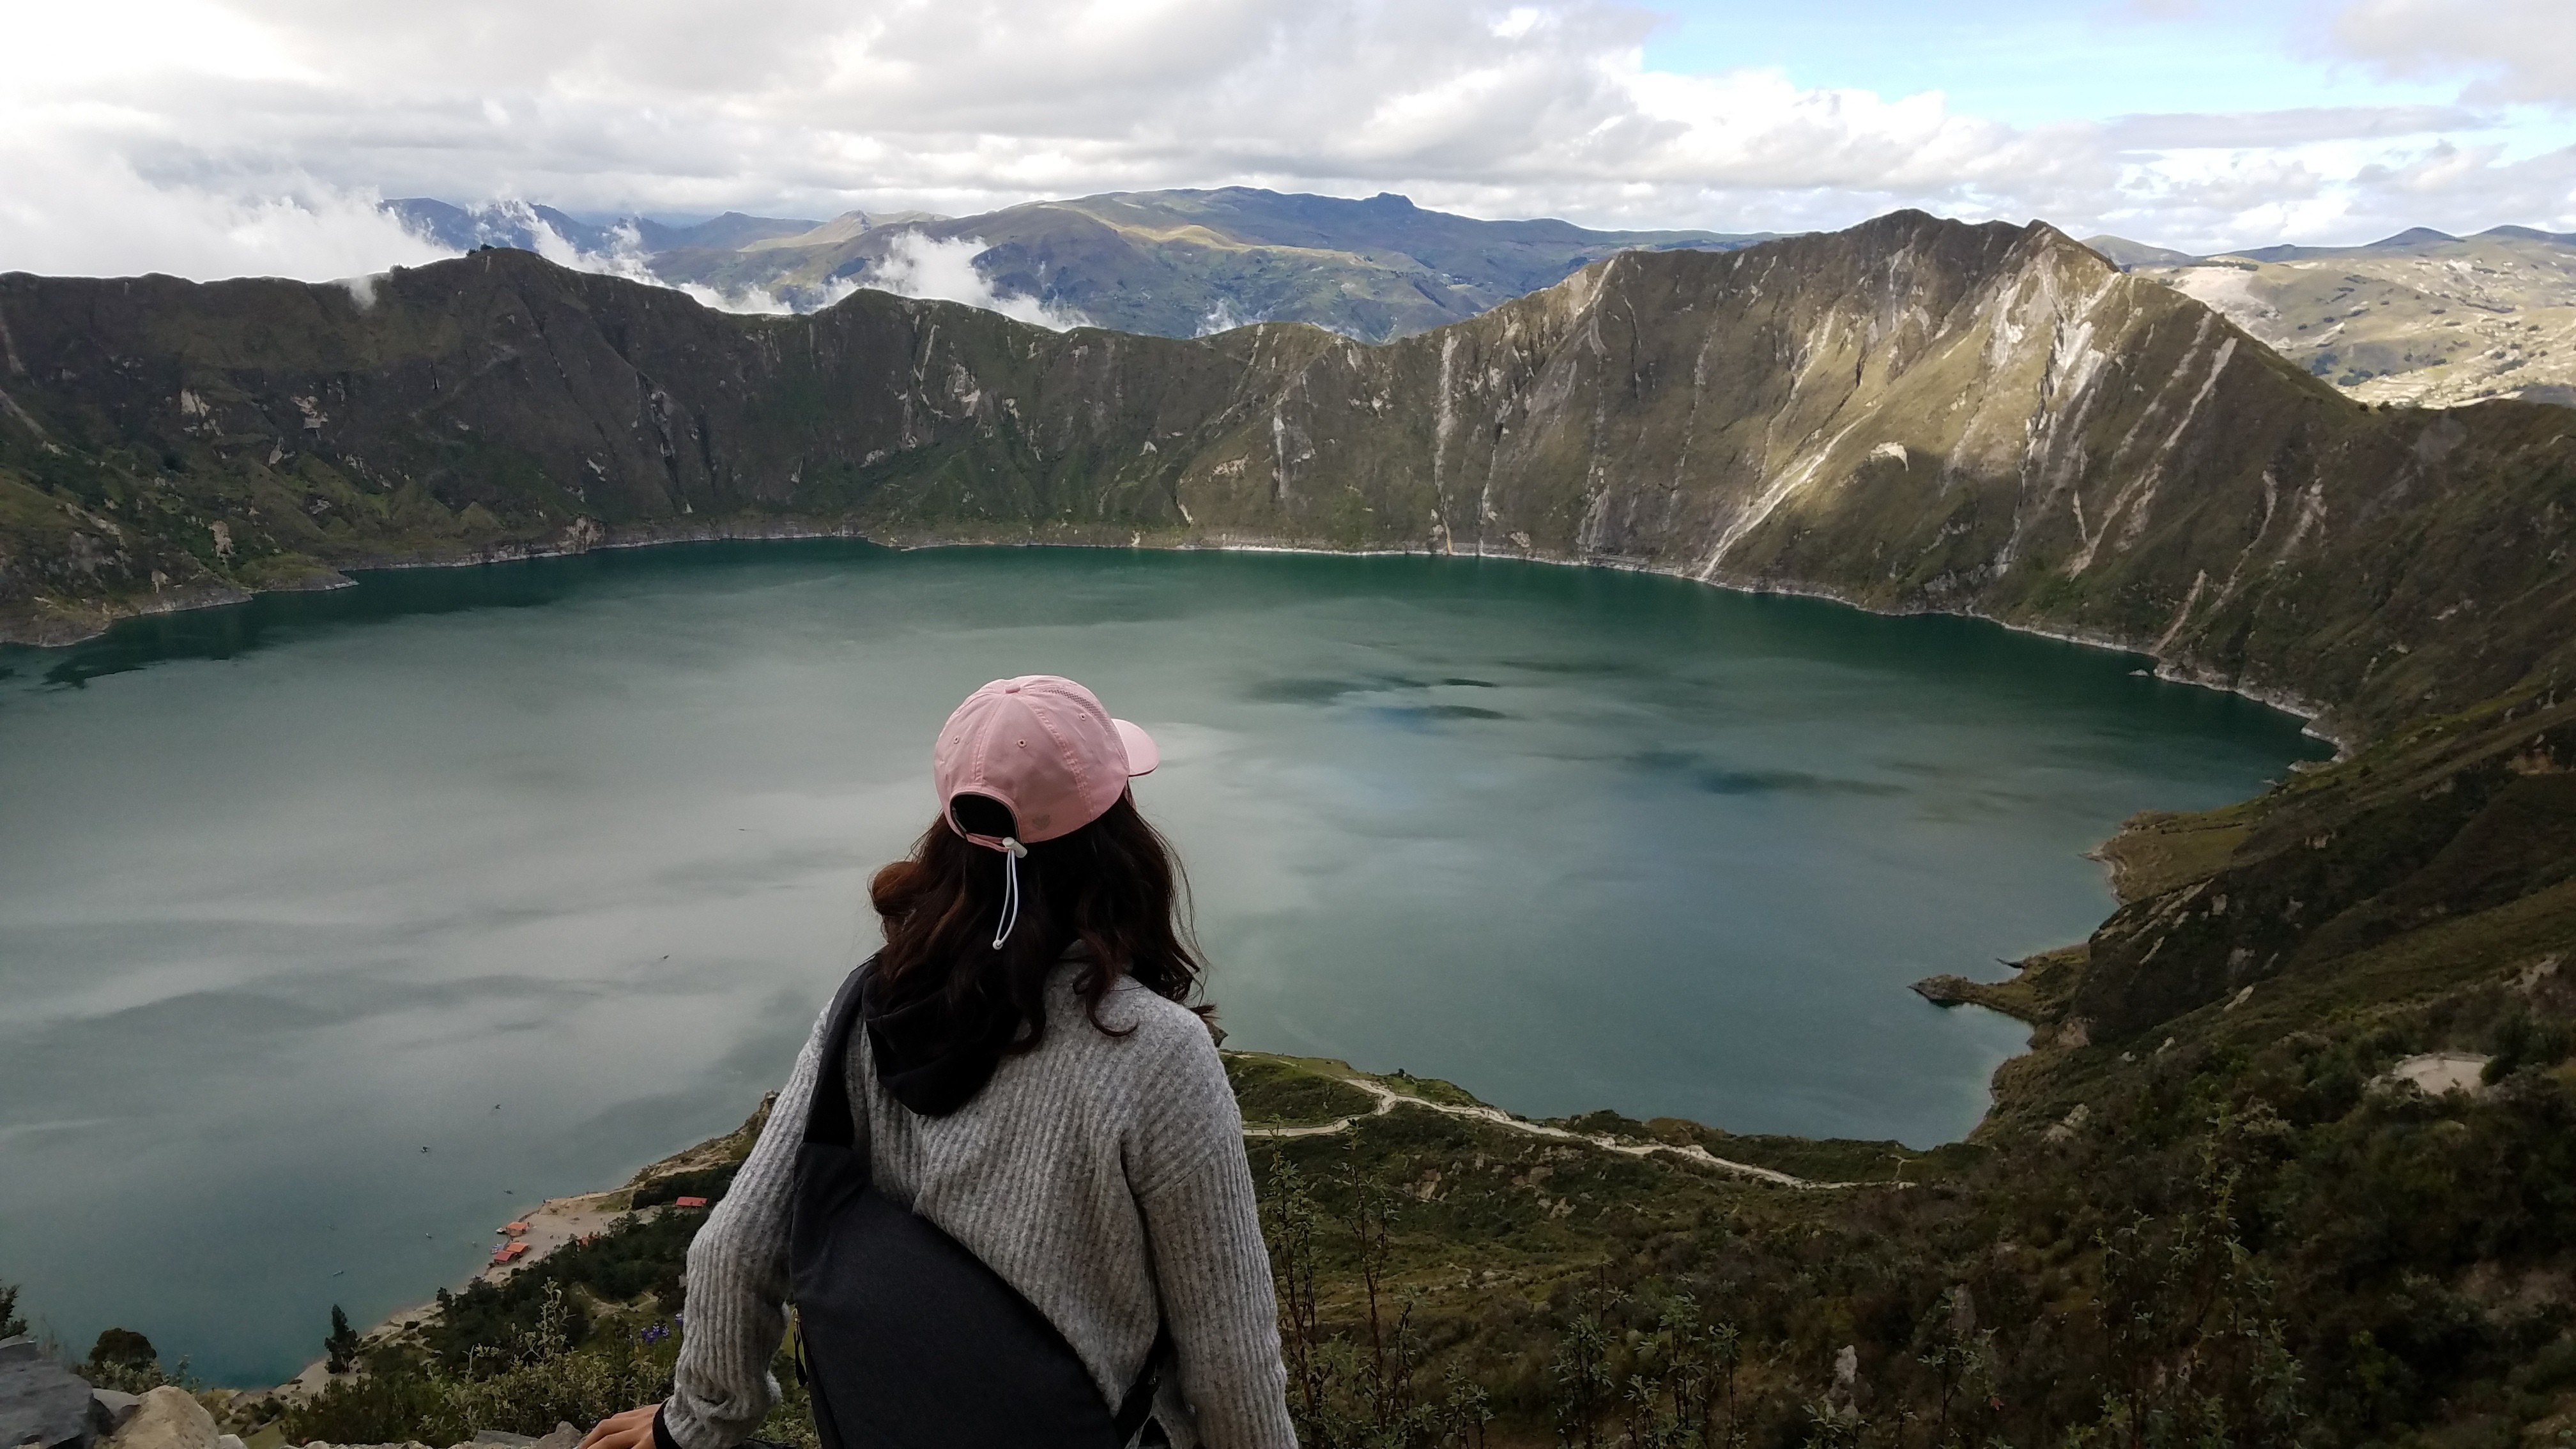 Ecuador: Day 1 – Quilotoa Loop to Banos